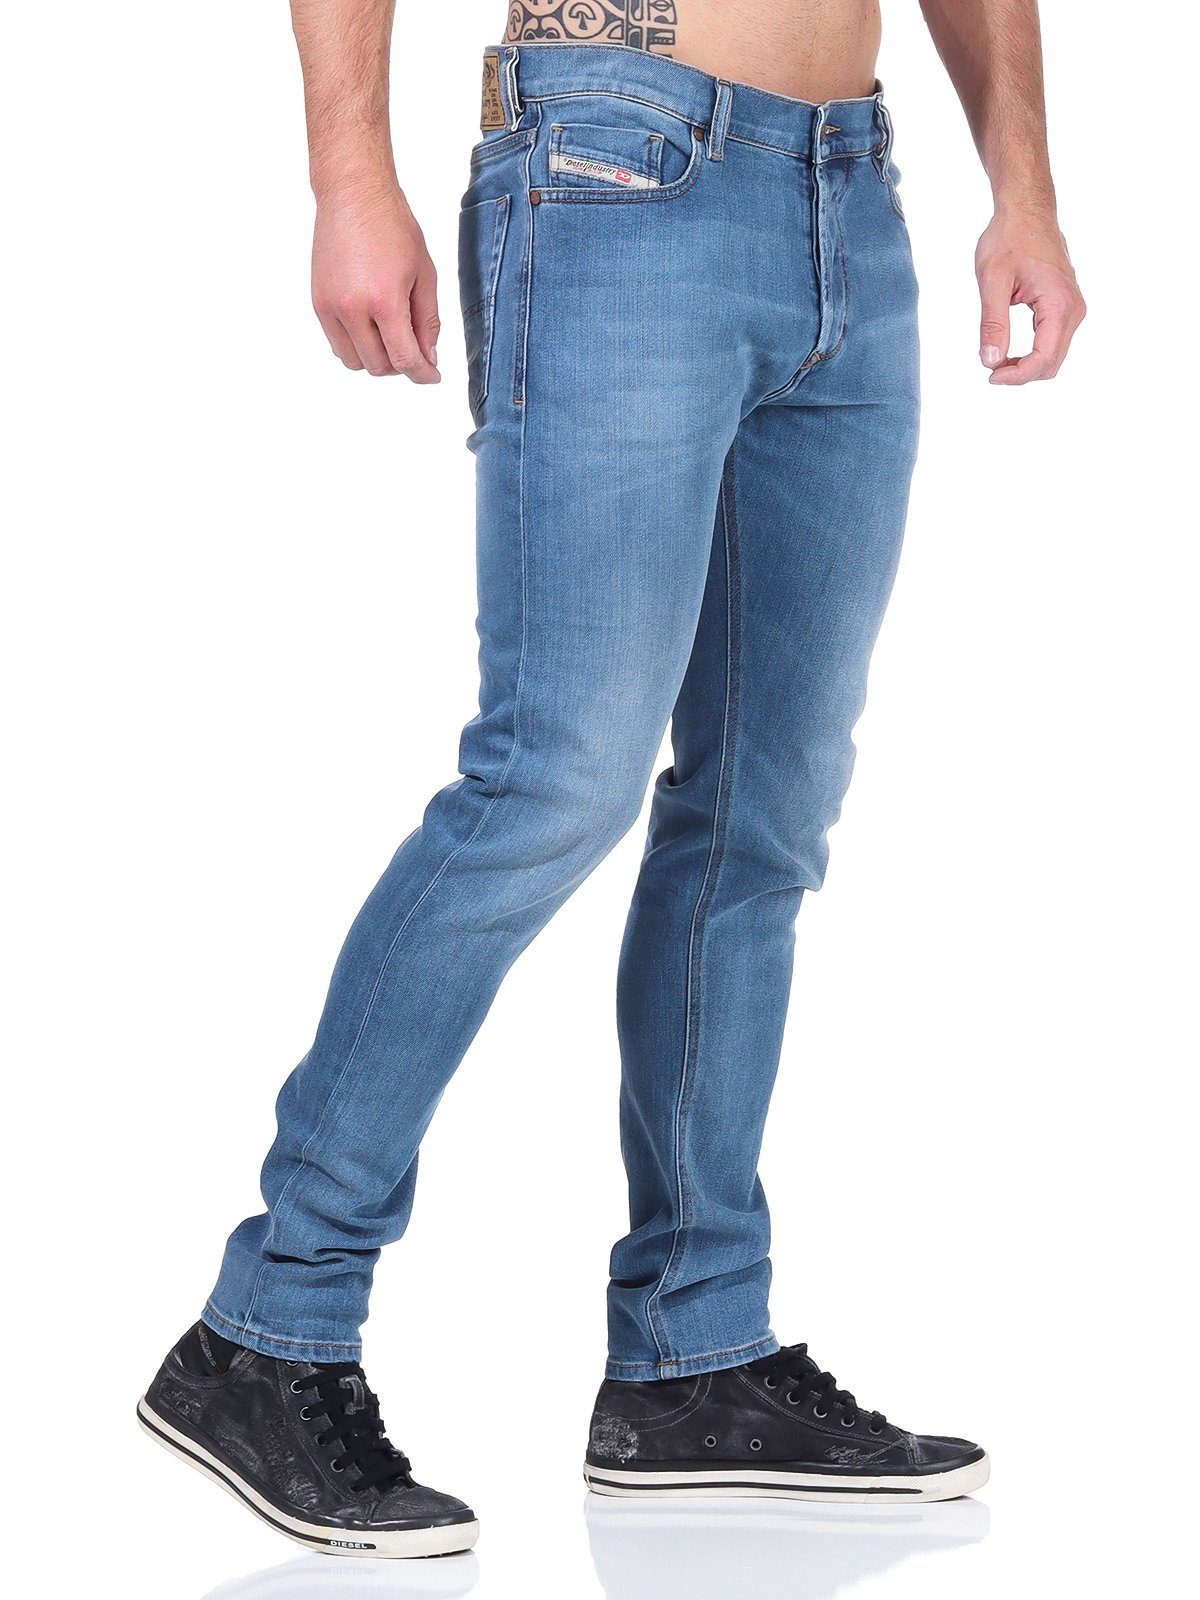 Stretch, 5-Pocket-Style, Used-Look R8XA3 Slim-fit-Jeans Herren Blau, Tepphar-X Röhrenjeans, Diesel